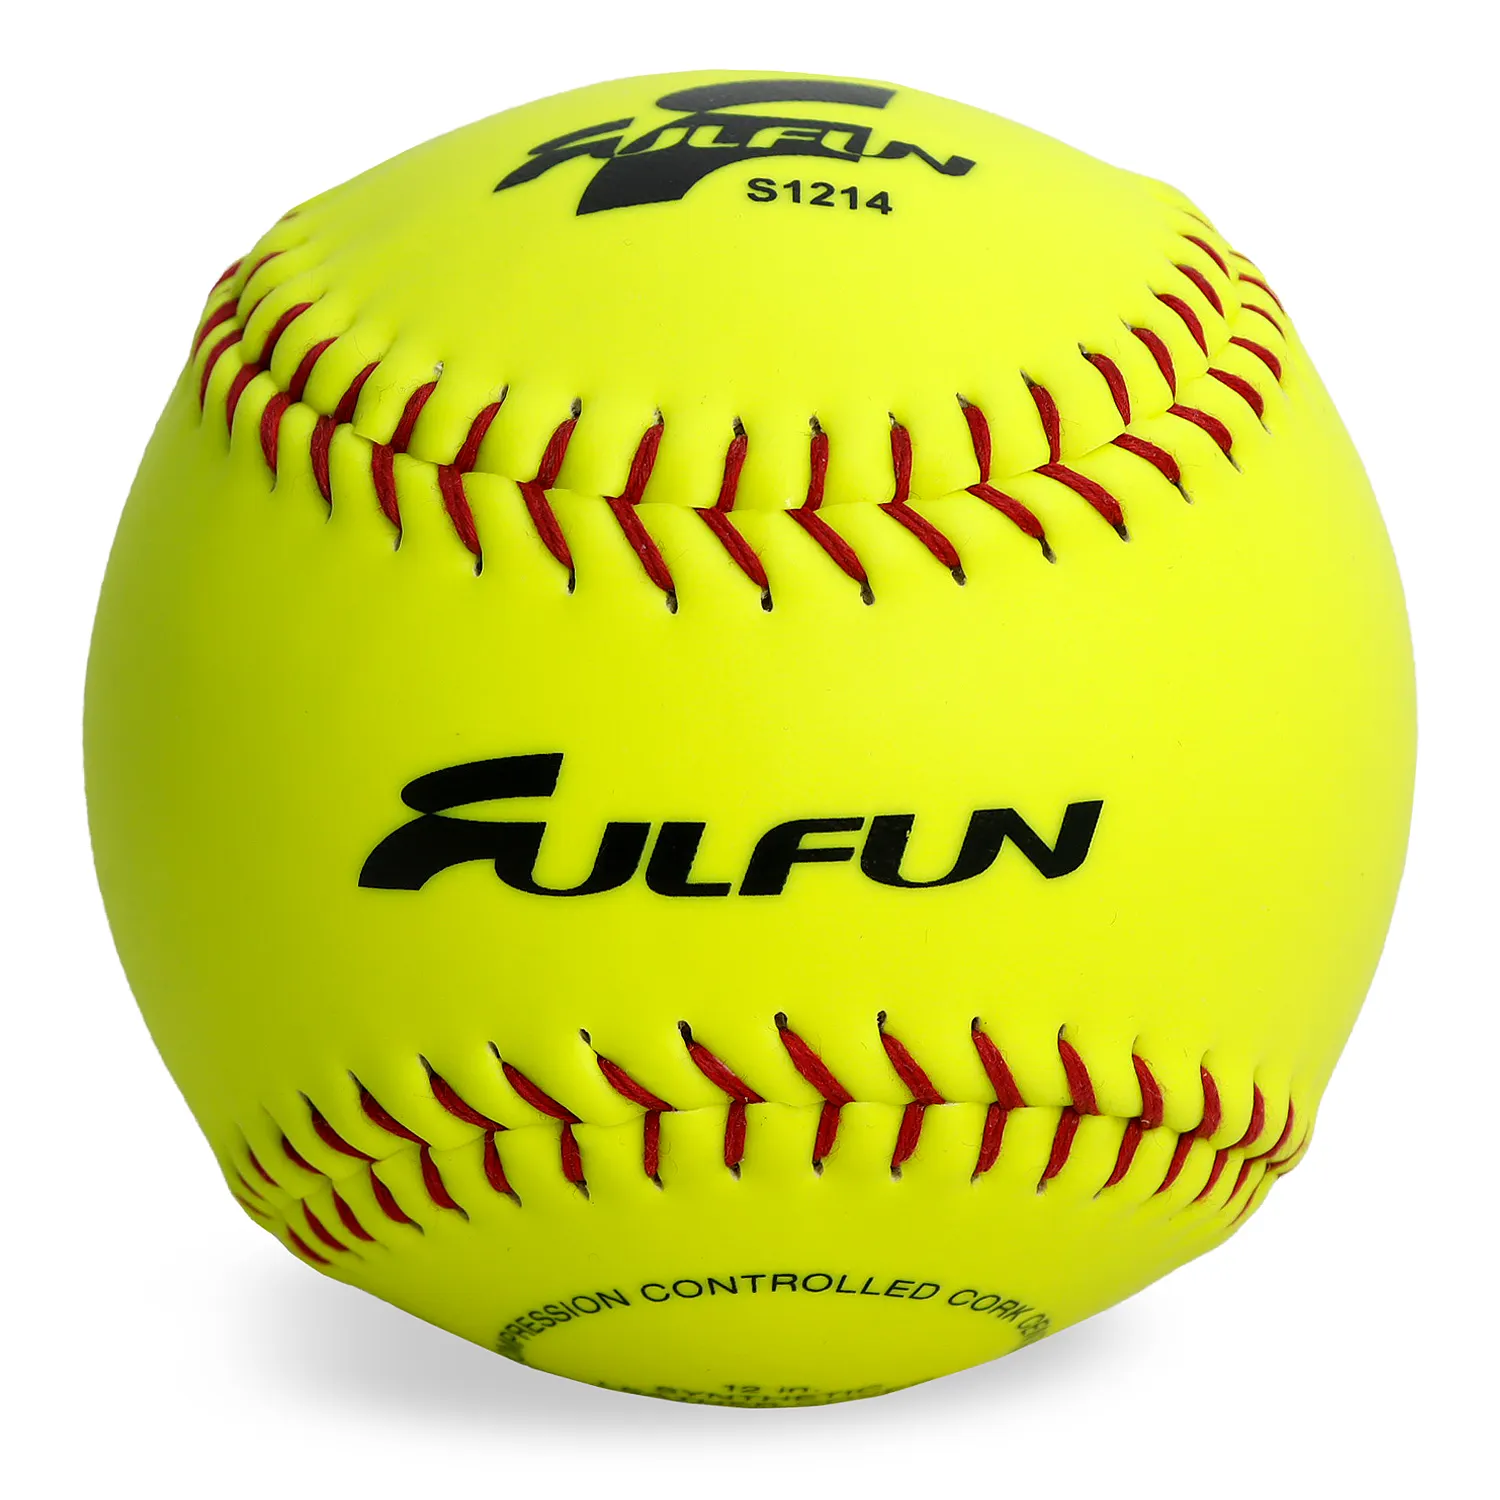 Logotipo personalizado de corcho, núcleo de softball, de cuero, PVC